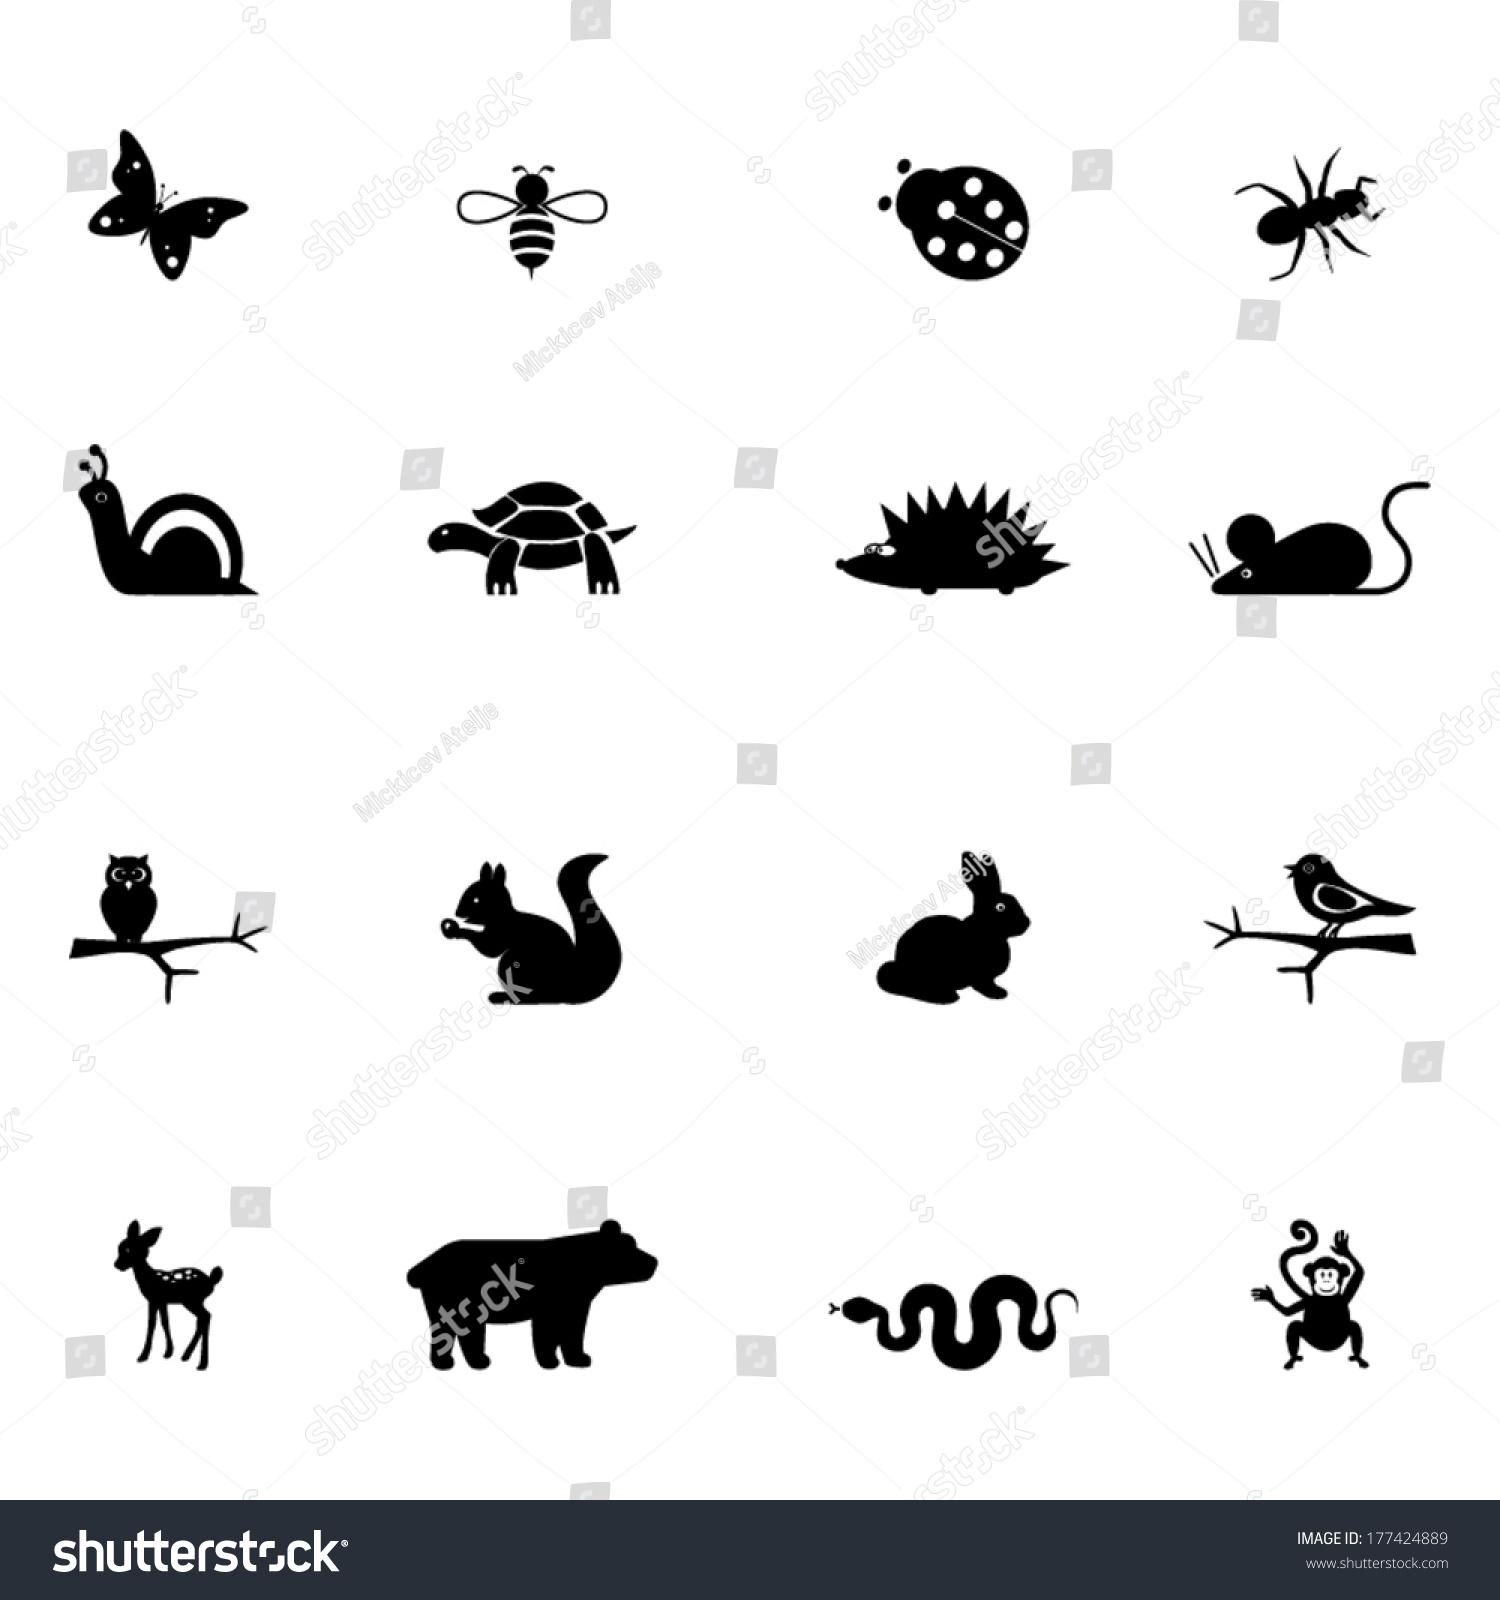 Illustrations Animals Stock Vector 177424889 - Shutterstock